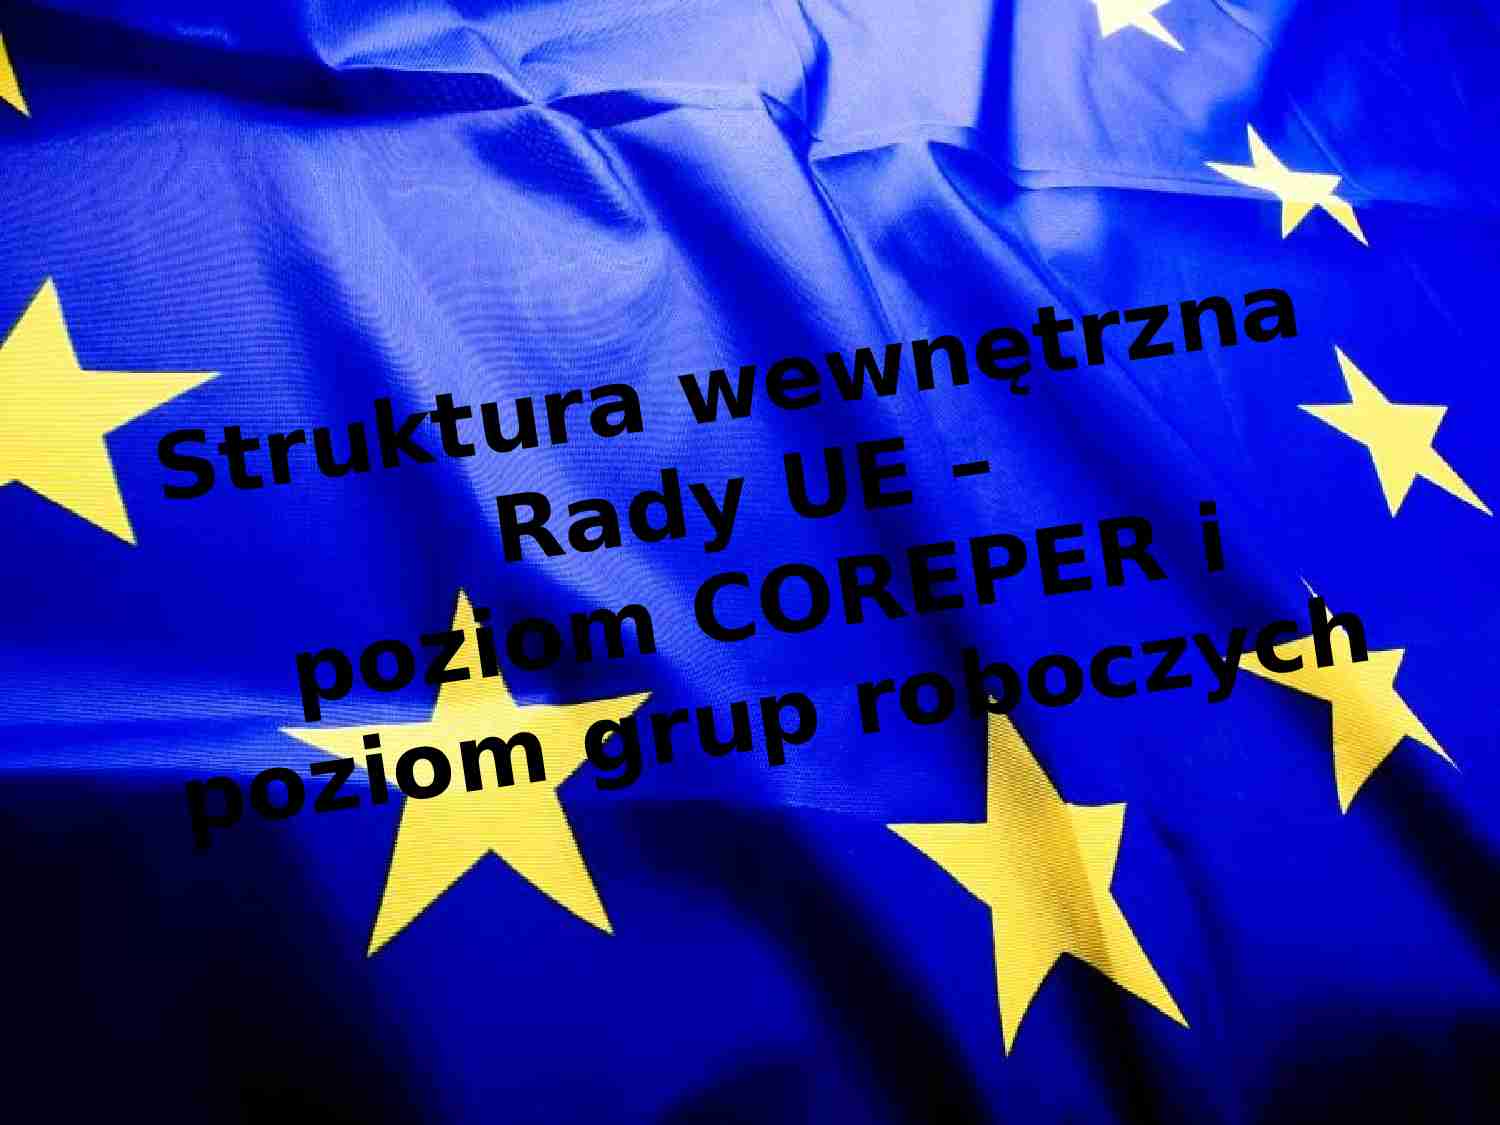 Struktura wewnętrzna Rady UE –poziom COREPER i poziom grup roboczych - strona 1